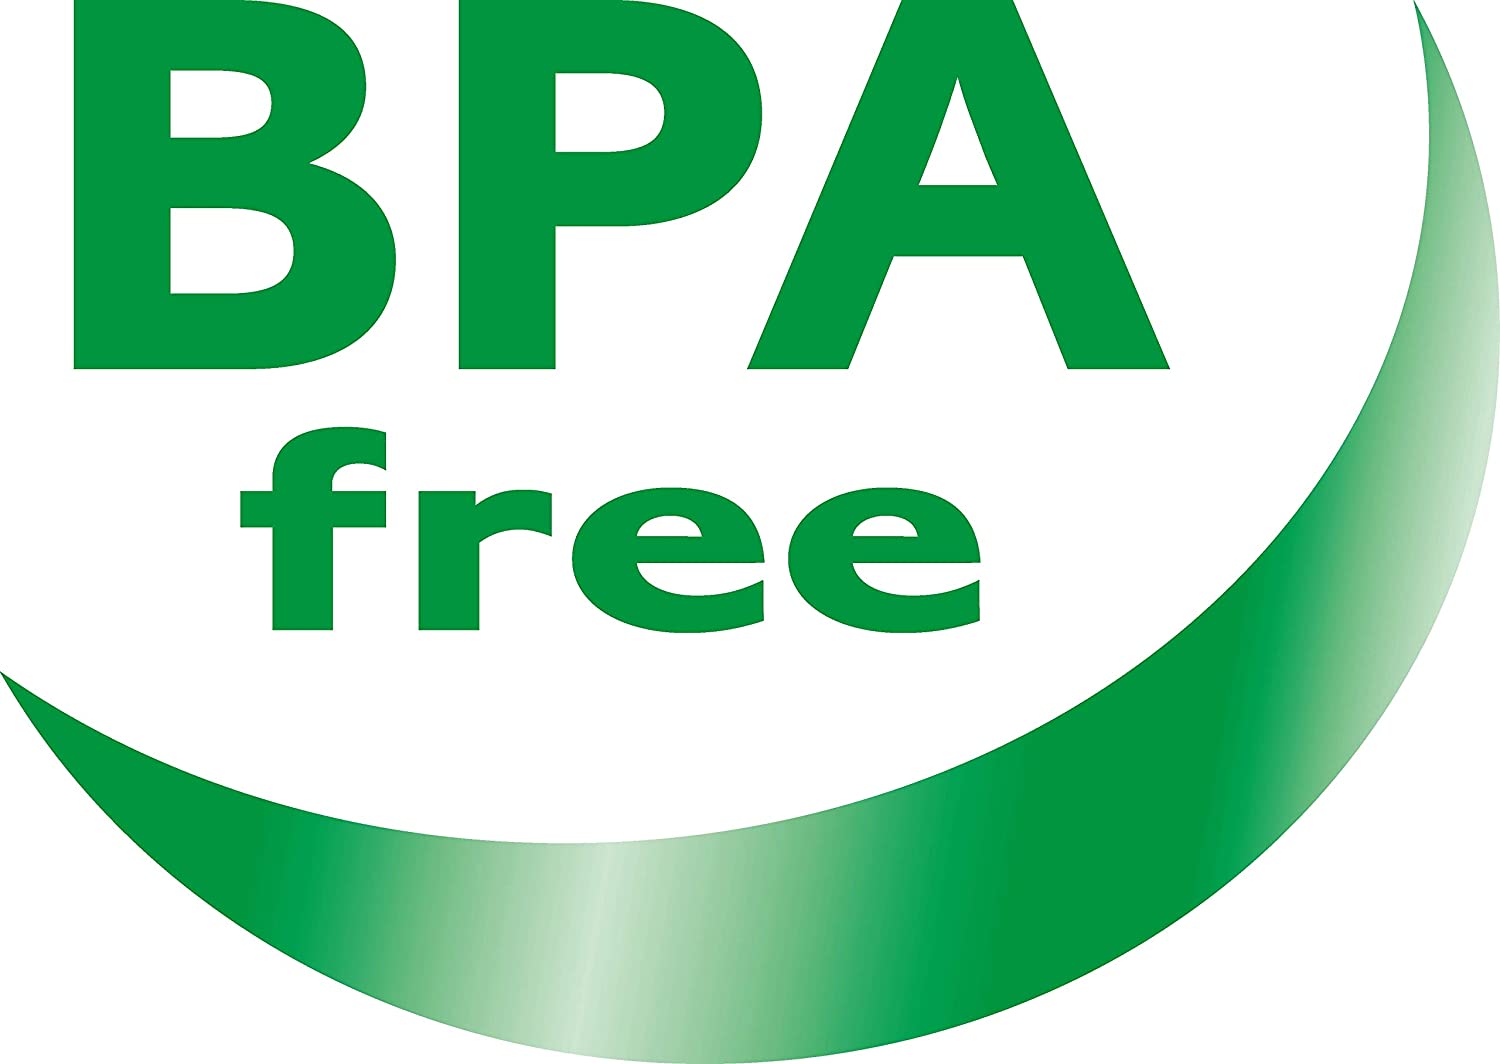 BPA Frei